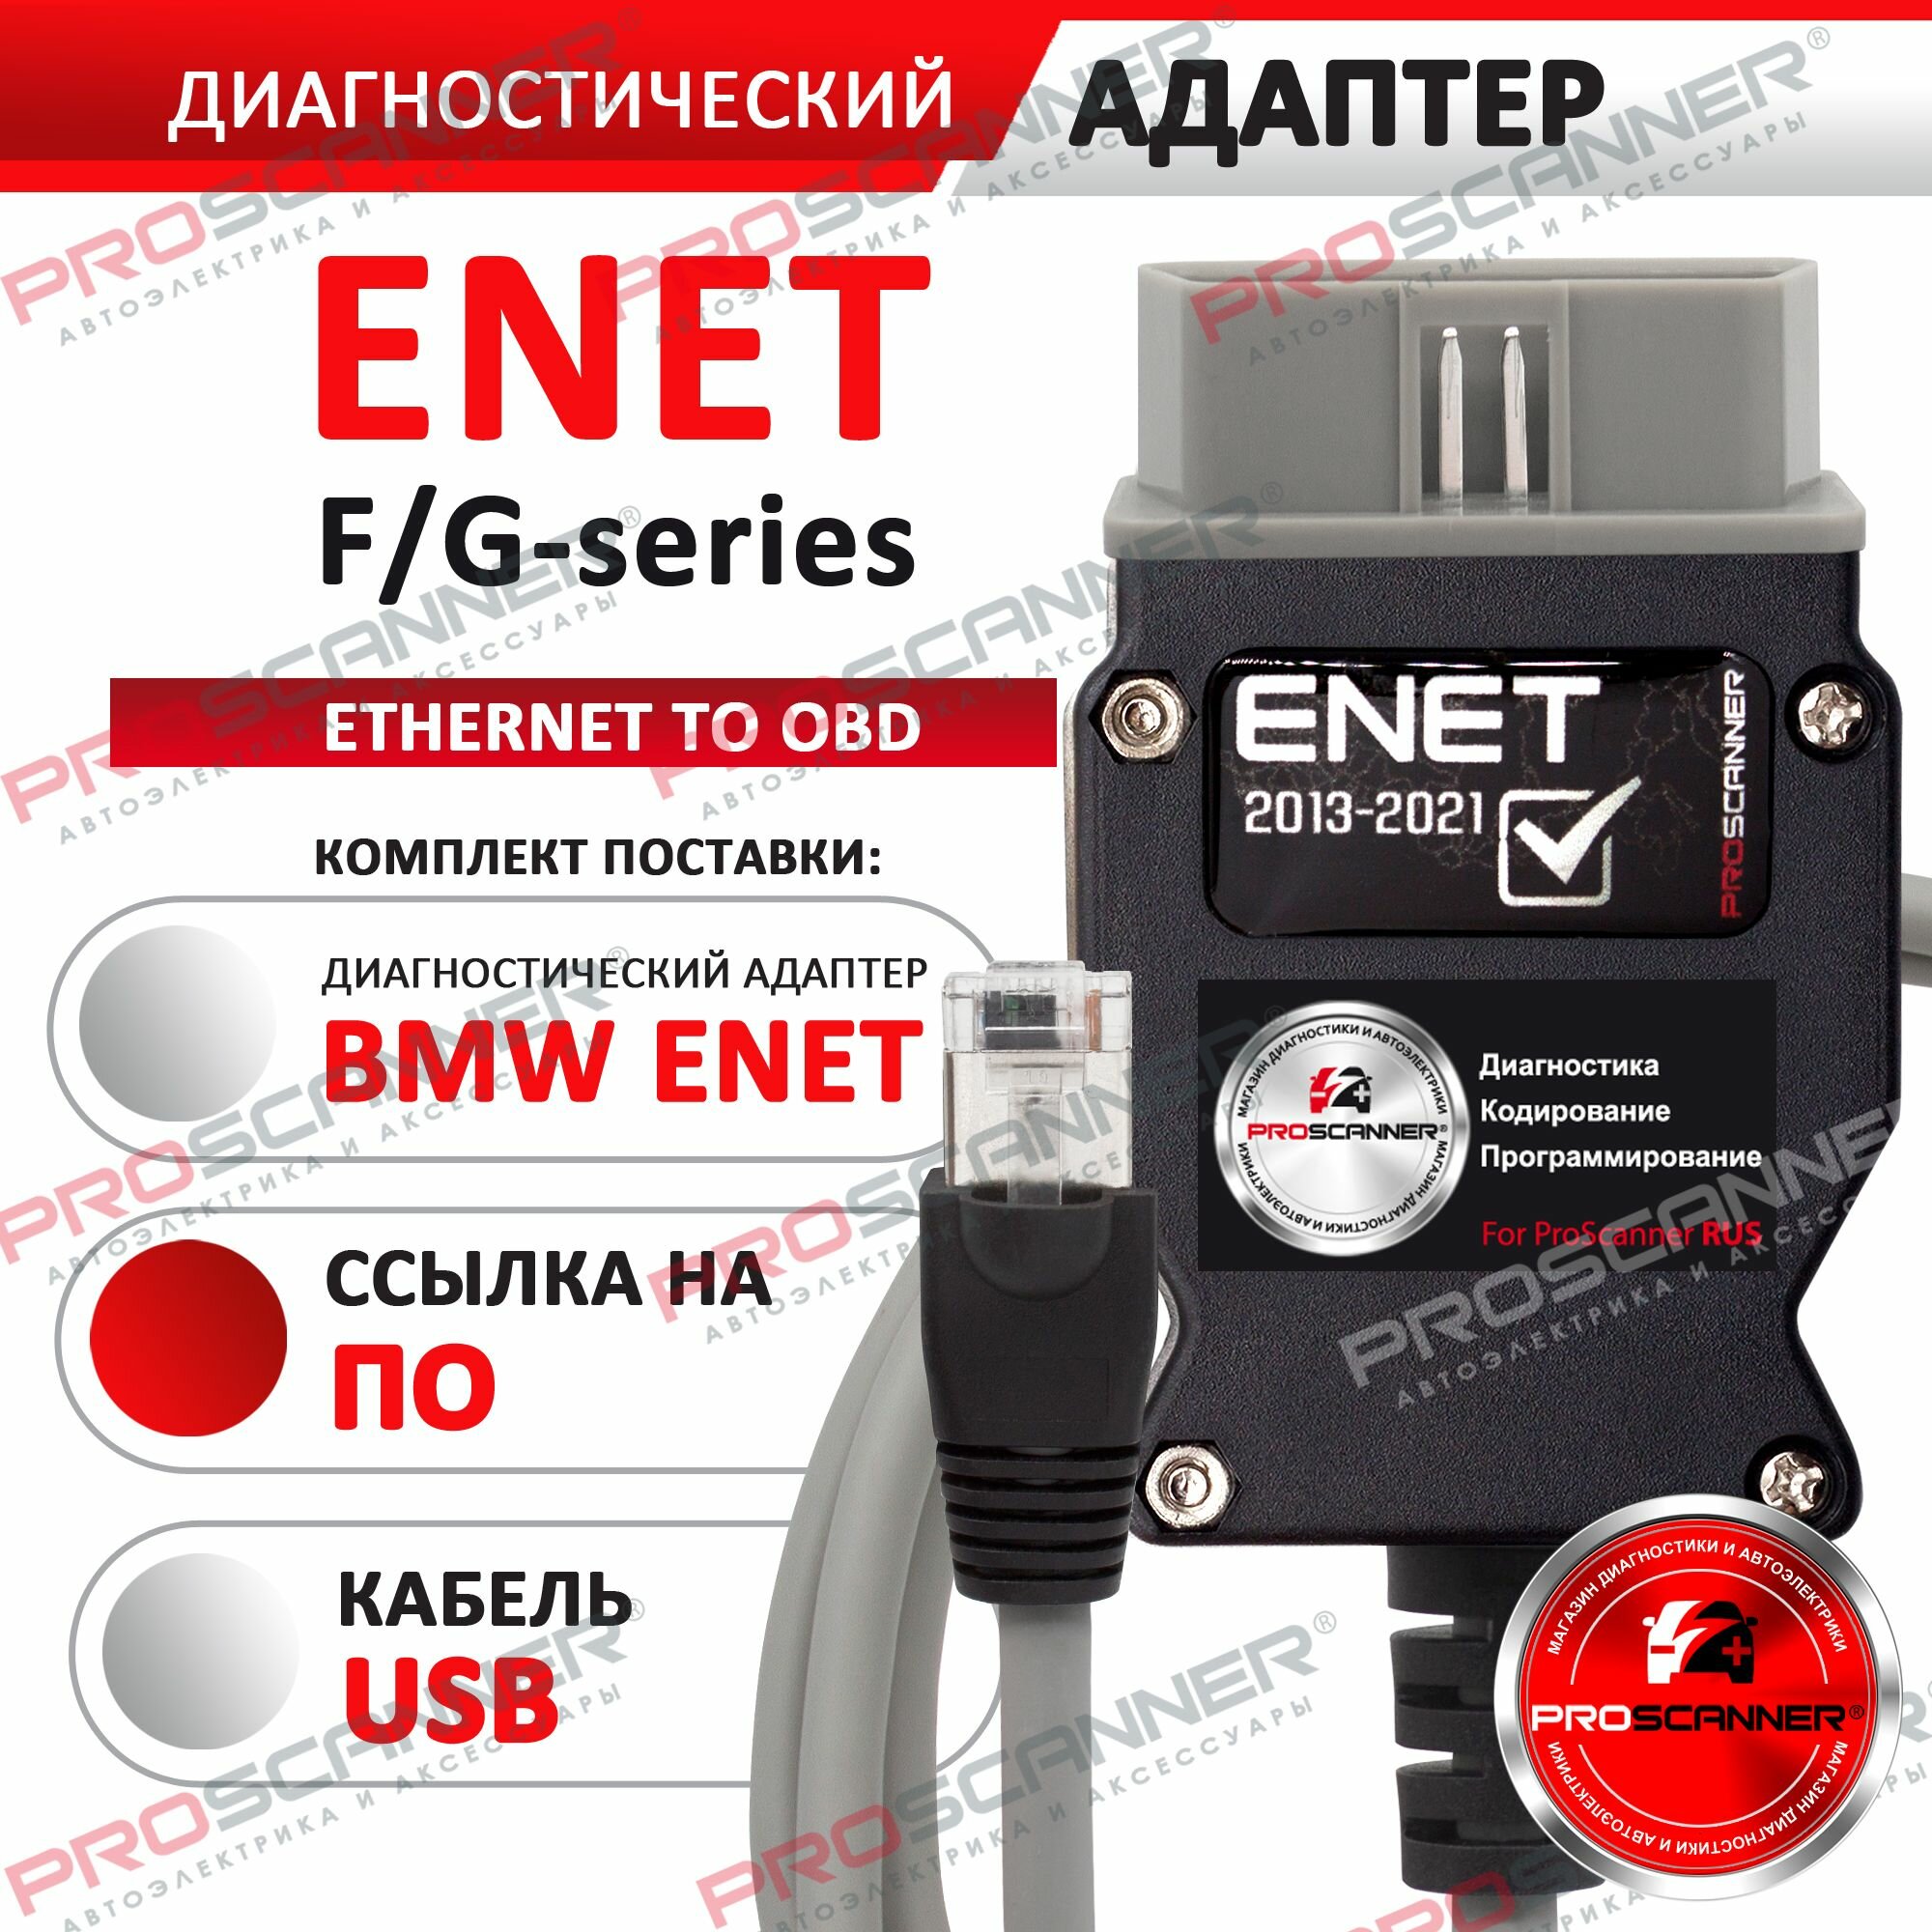 BMW Enet кабель диагностический для программ ESYS, Rheingold, Ista. Диагностика сканер БМВ F G серии, полная версия - серый